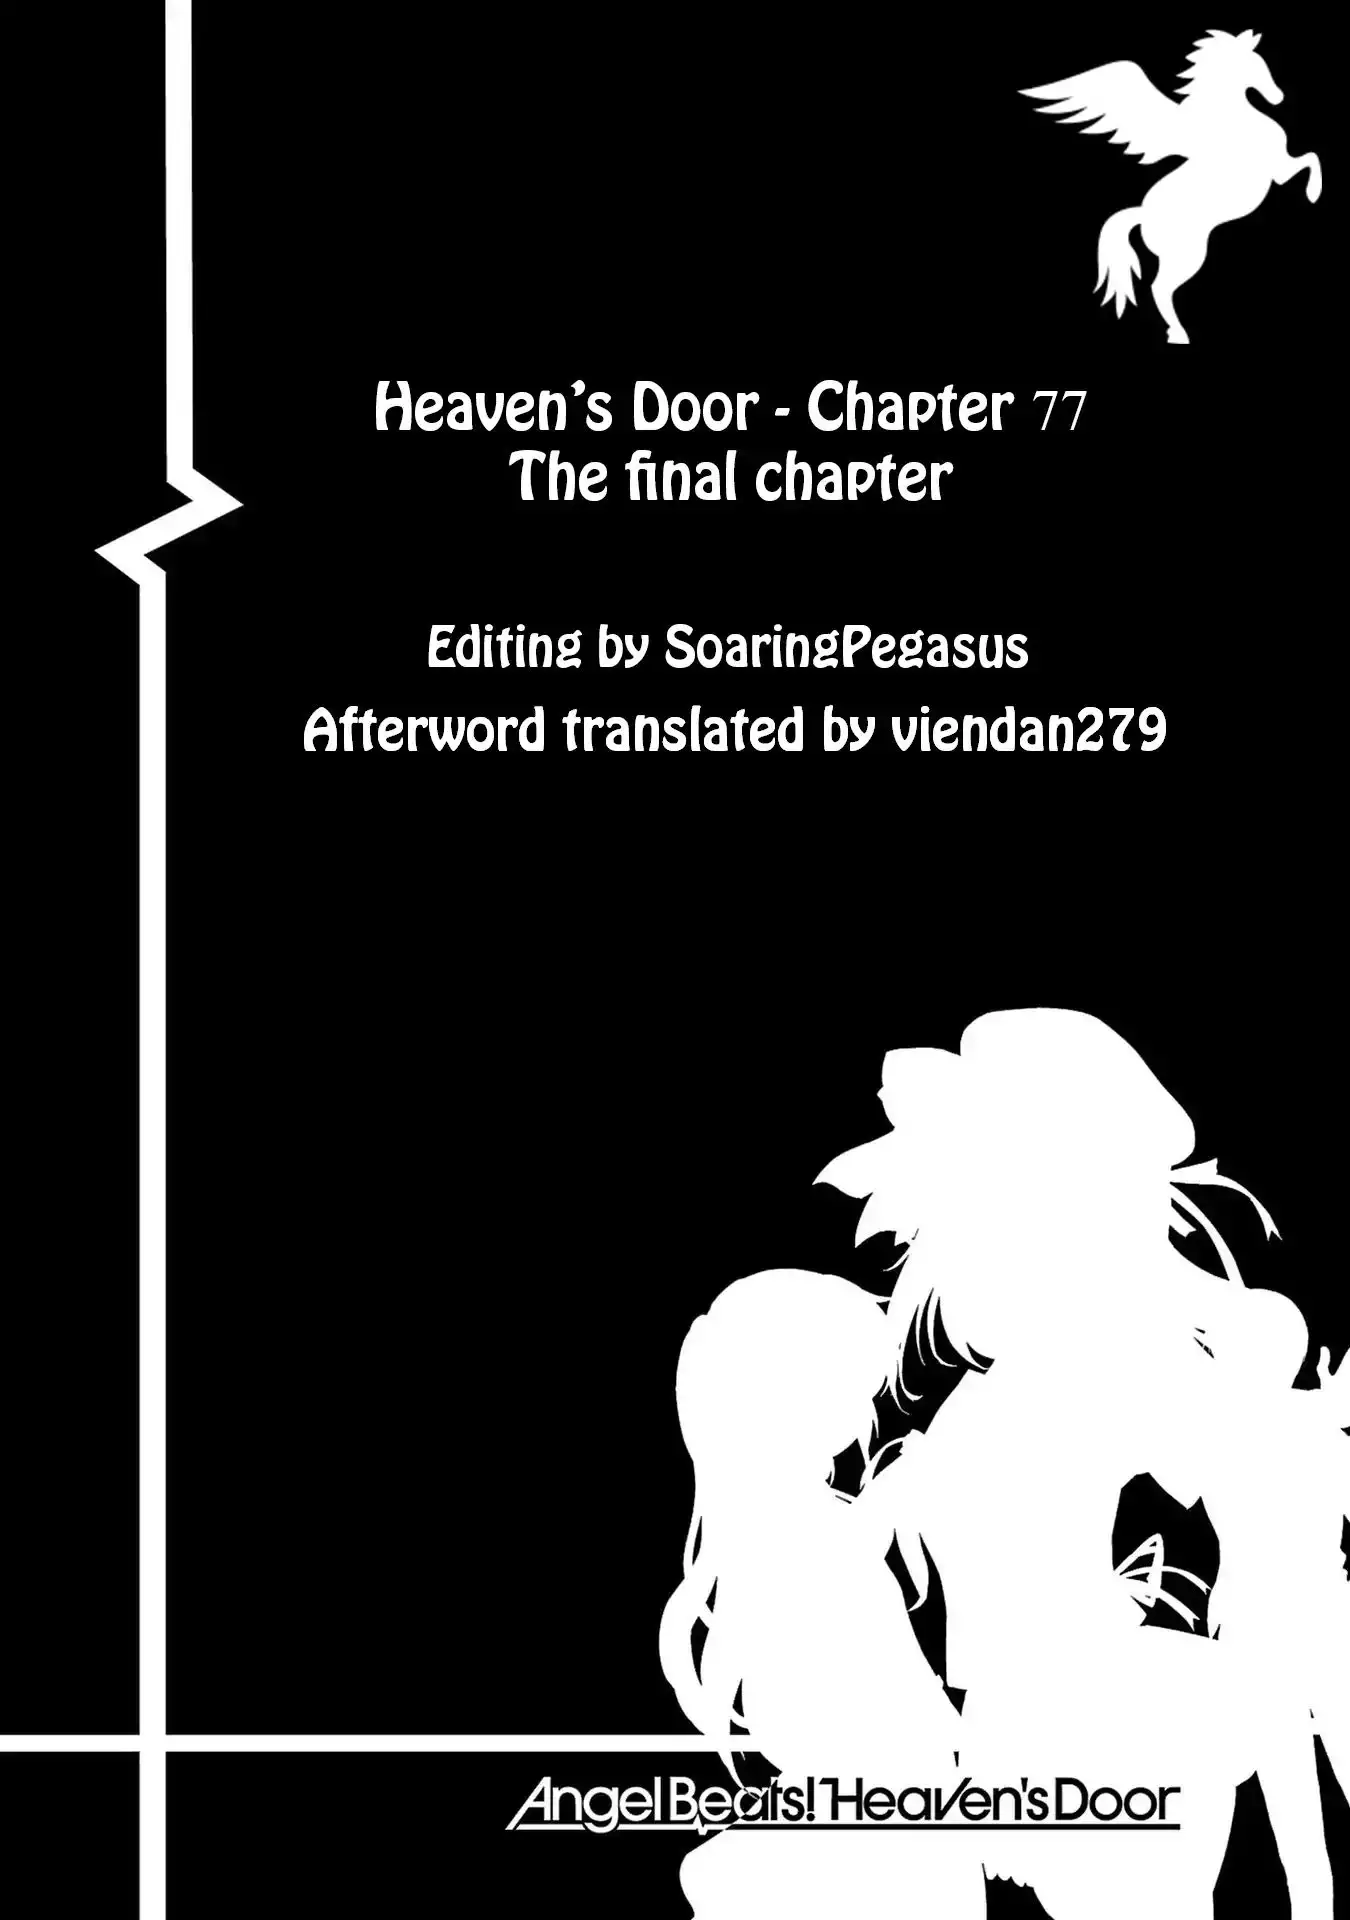 Angel Beats Heaven S Door Vol 11 Chapter 77 Ending End